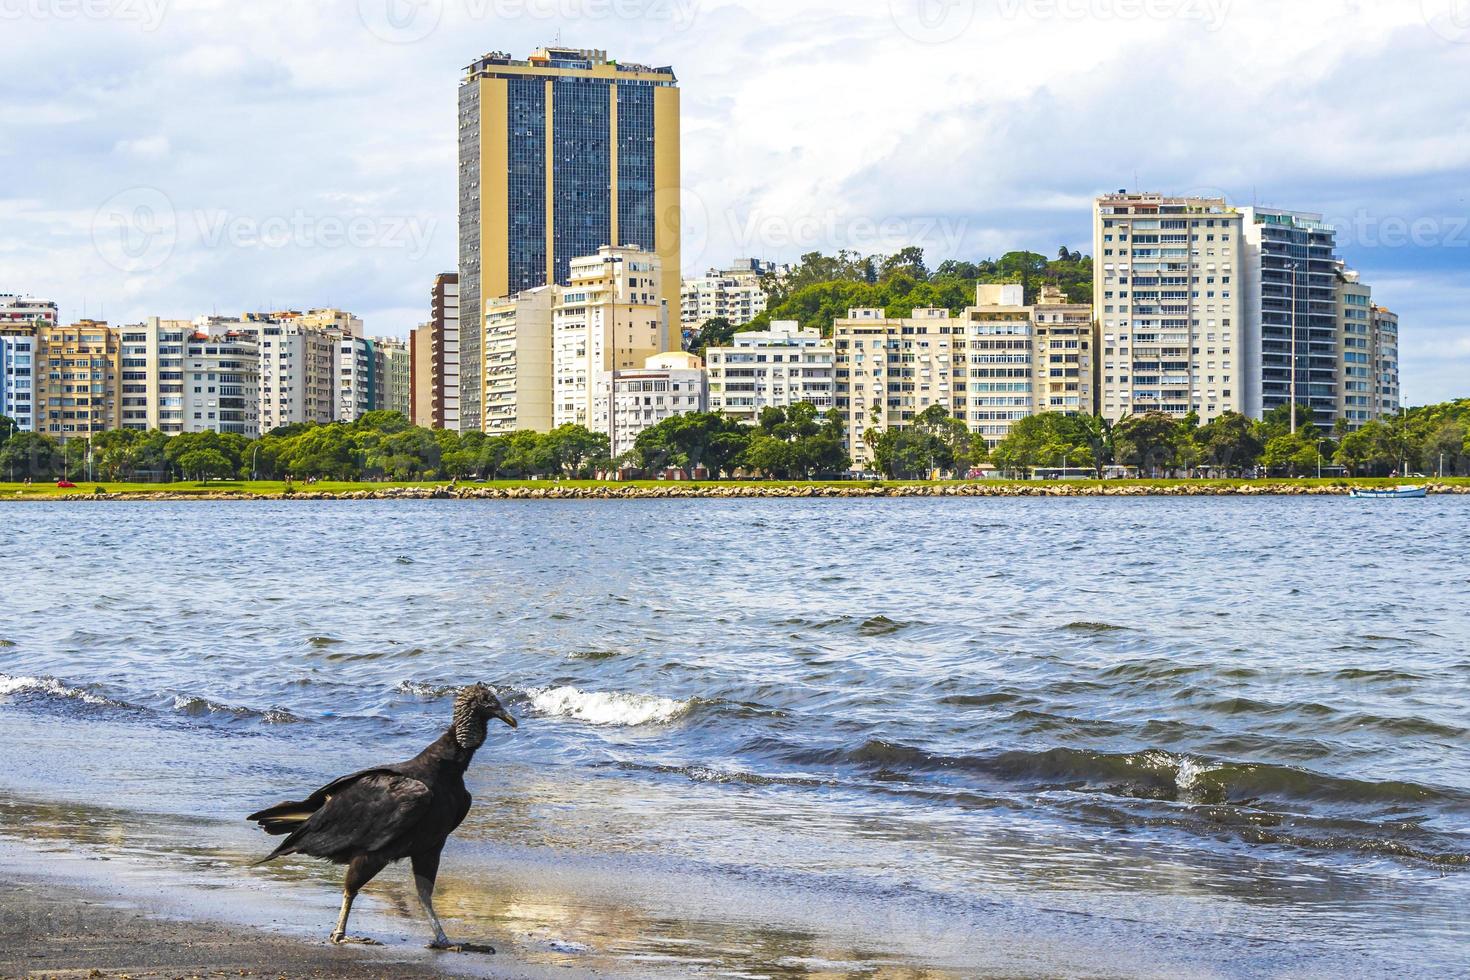 avvoltoio nero tropicale sulla spiaggia di botafogo rio de janeiro brasile. foto